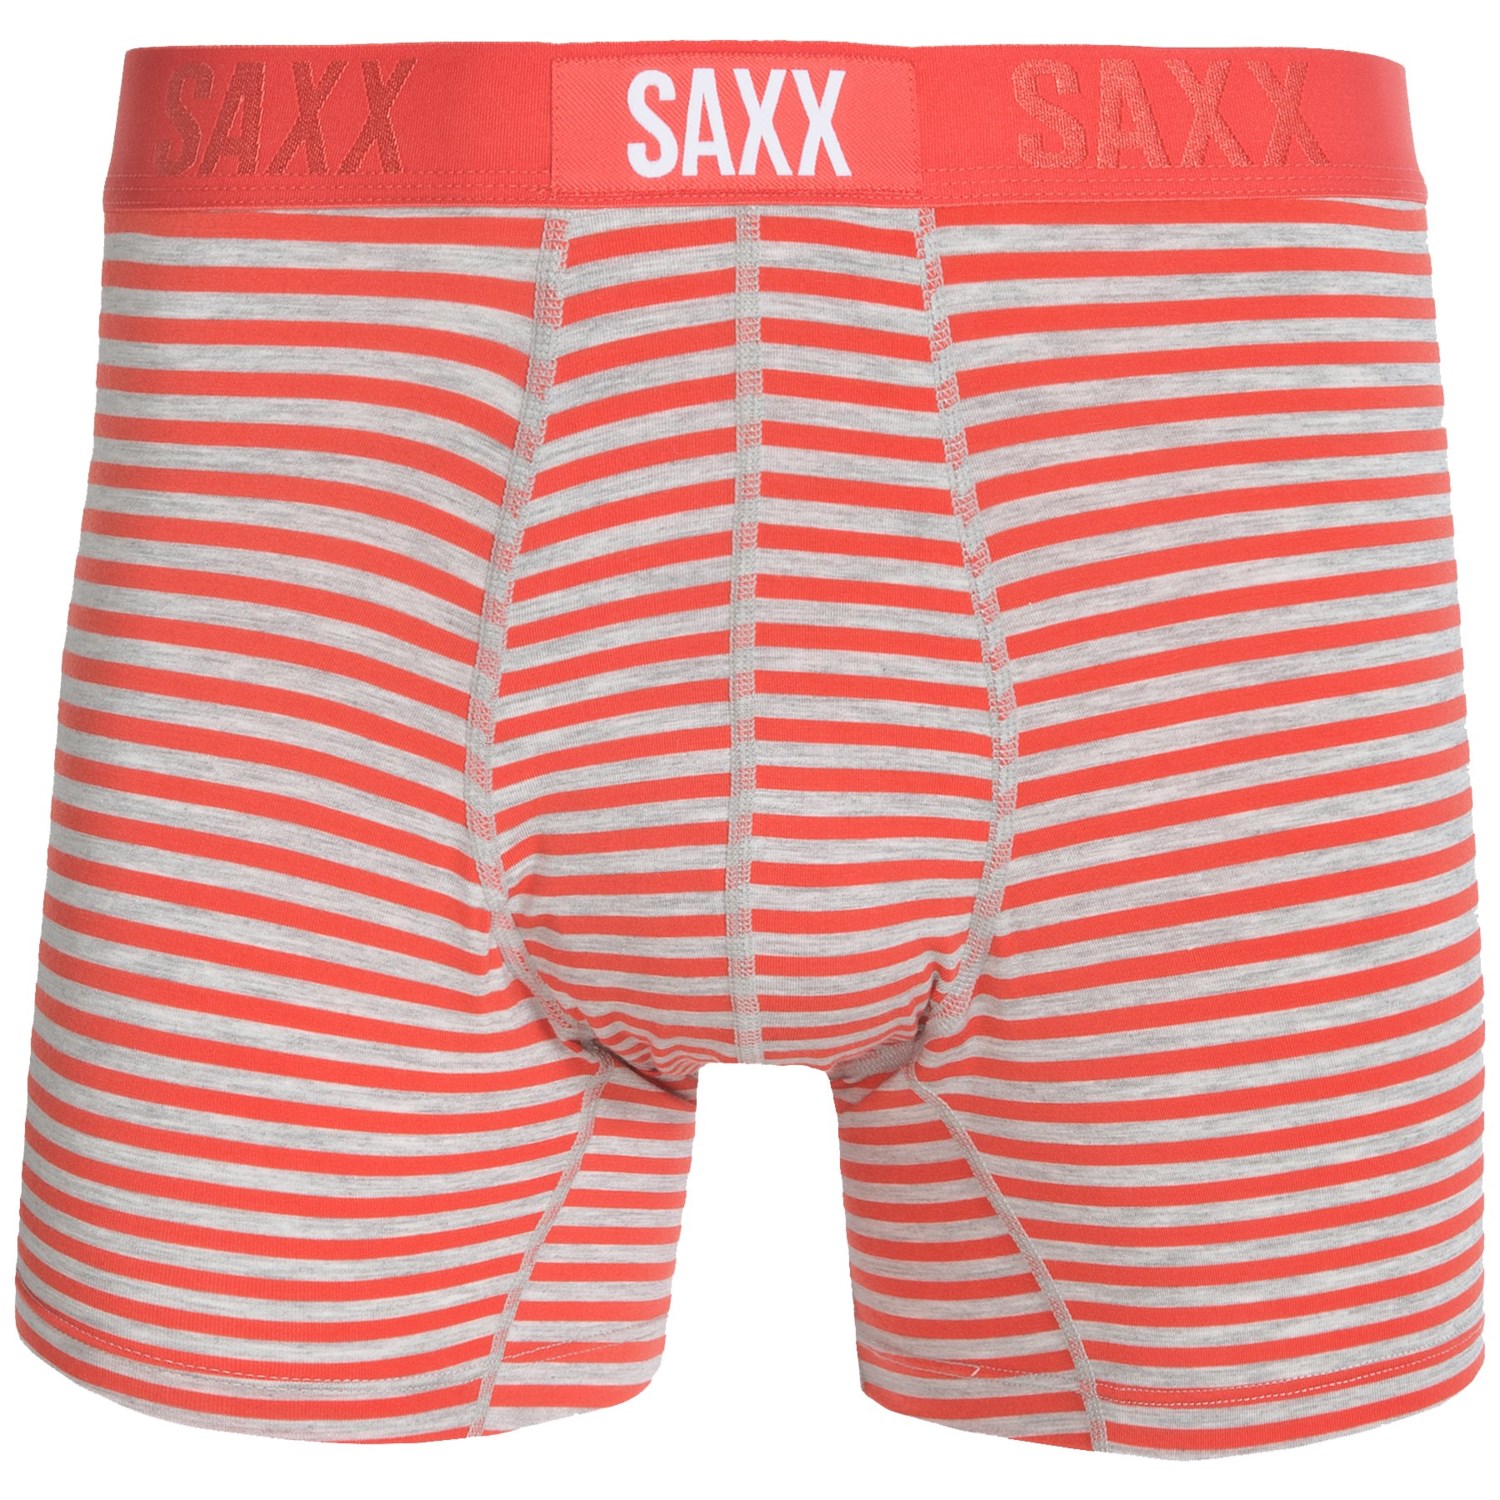 SAXX Underwear Vibe Boxer Briefs - Modern Fit (For Men) - Save 37%